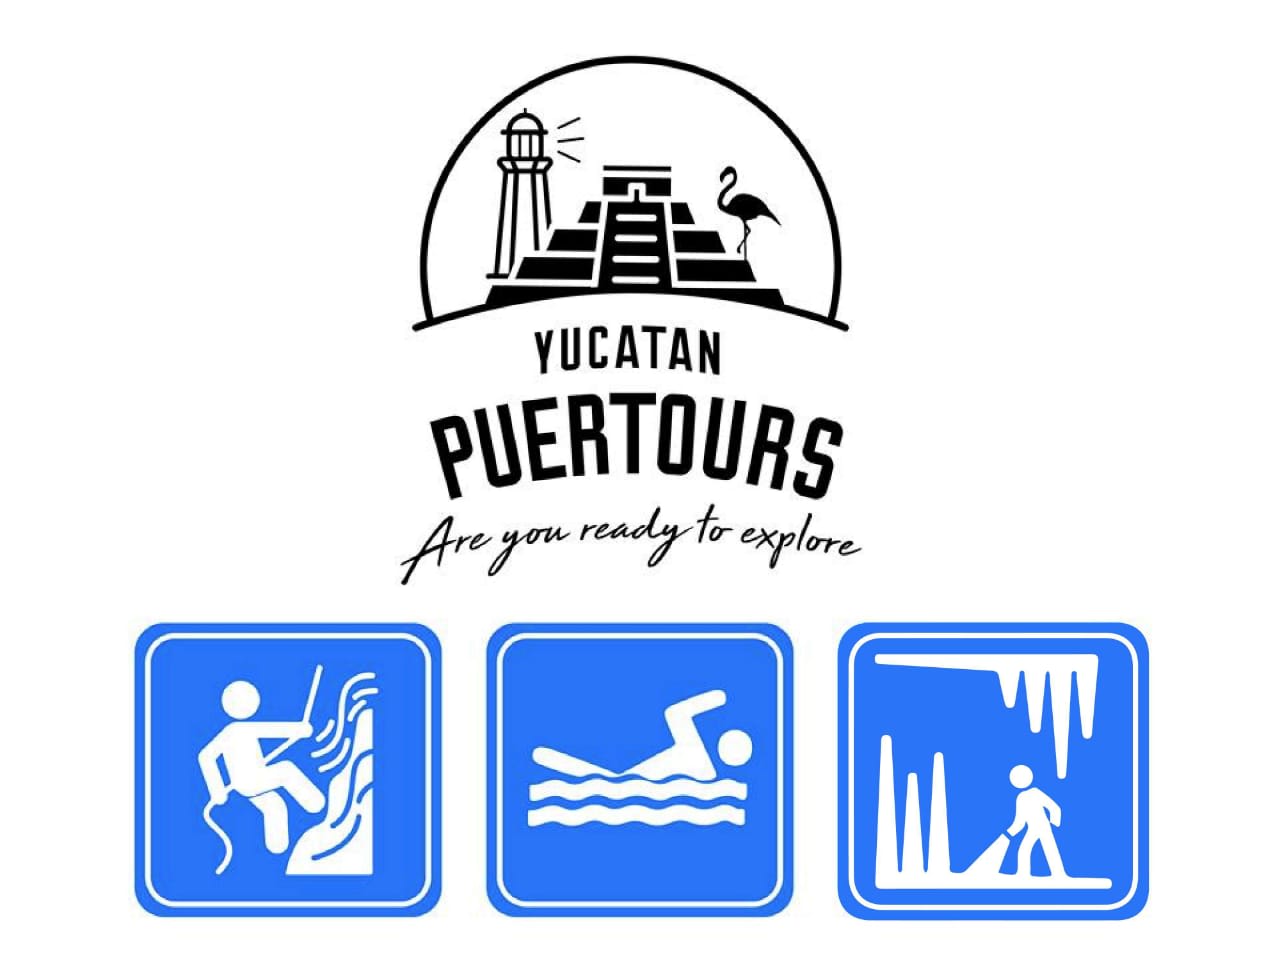 Yucatan Puertours